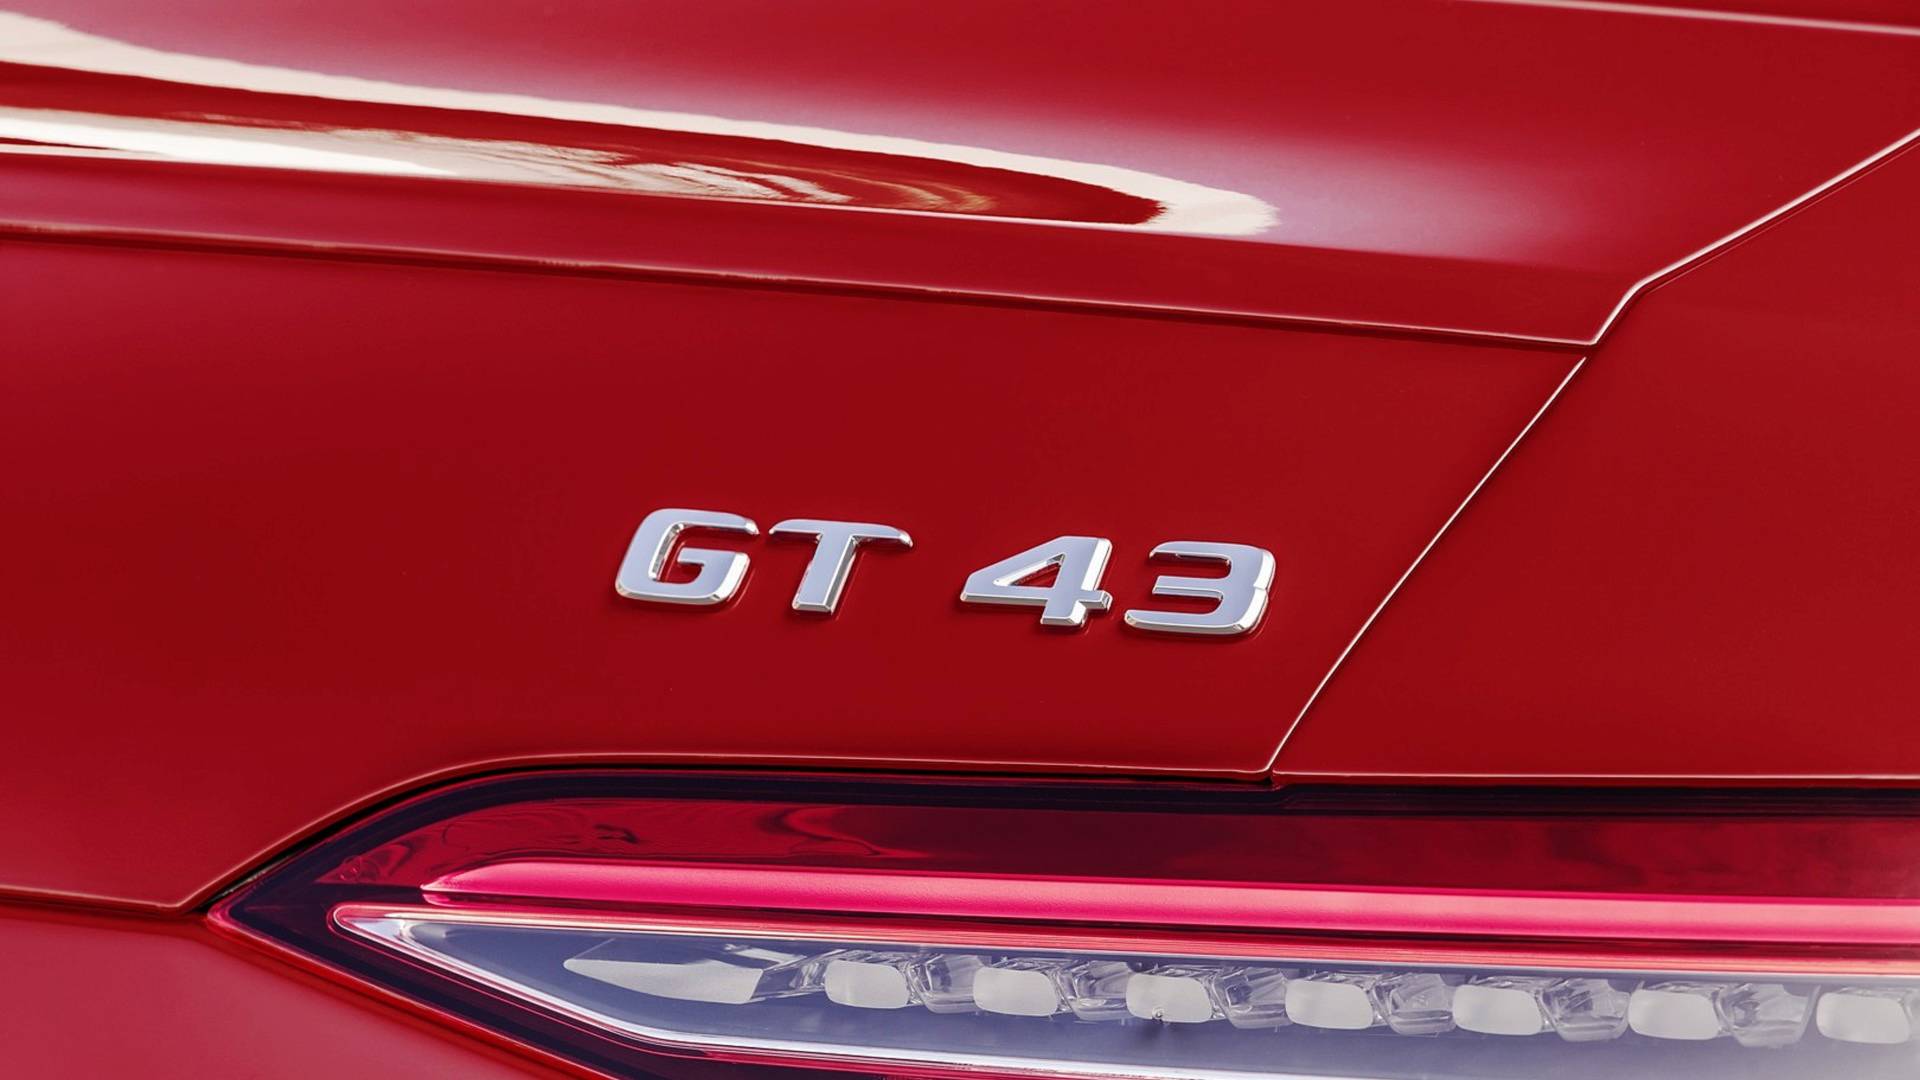 Mercedes-AMG GT 43 4 puertas: debut con seis cilindros por bandera